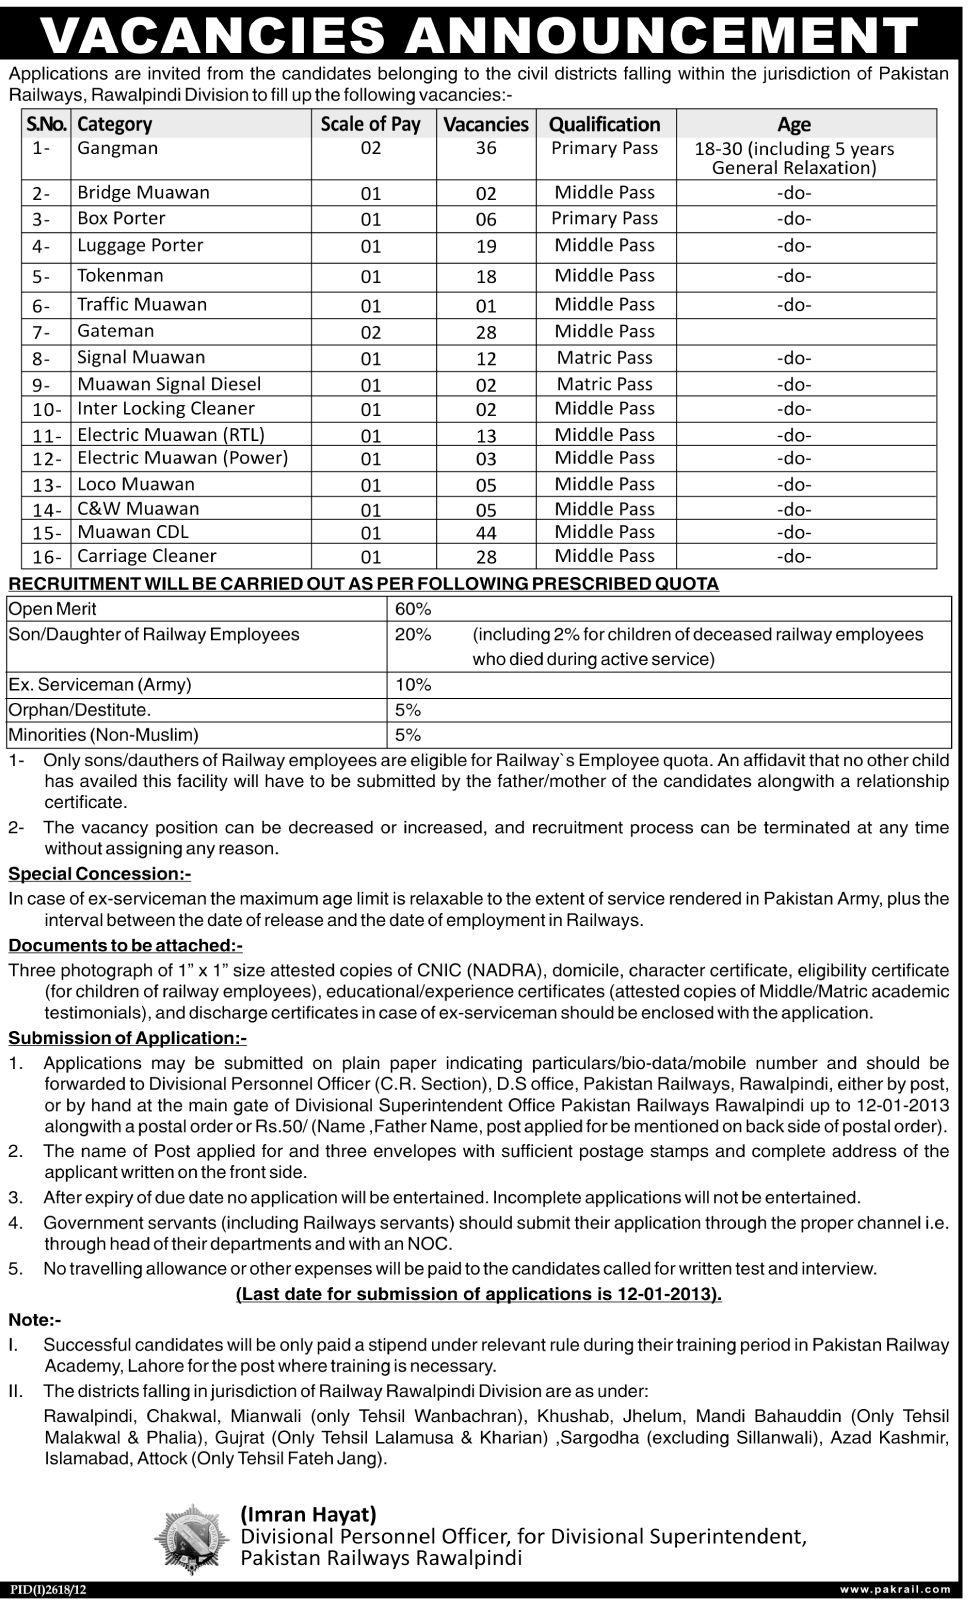 Pakistan Railway Rawalpindi Jobs 2012 December Application Form